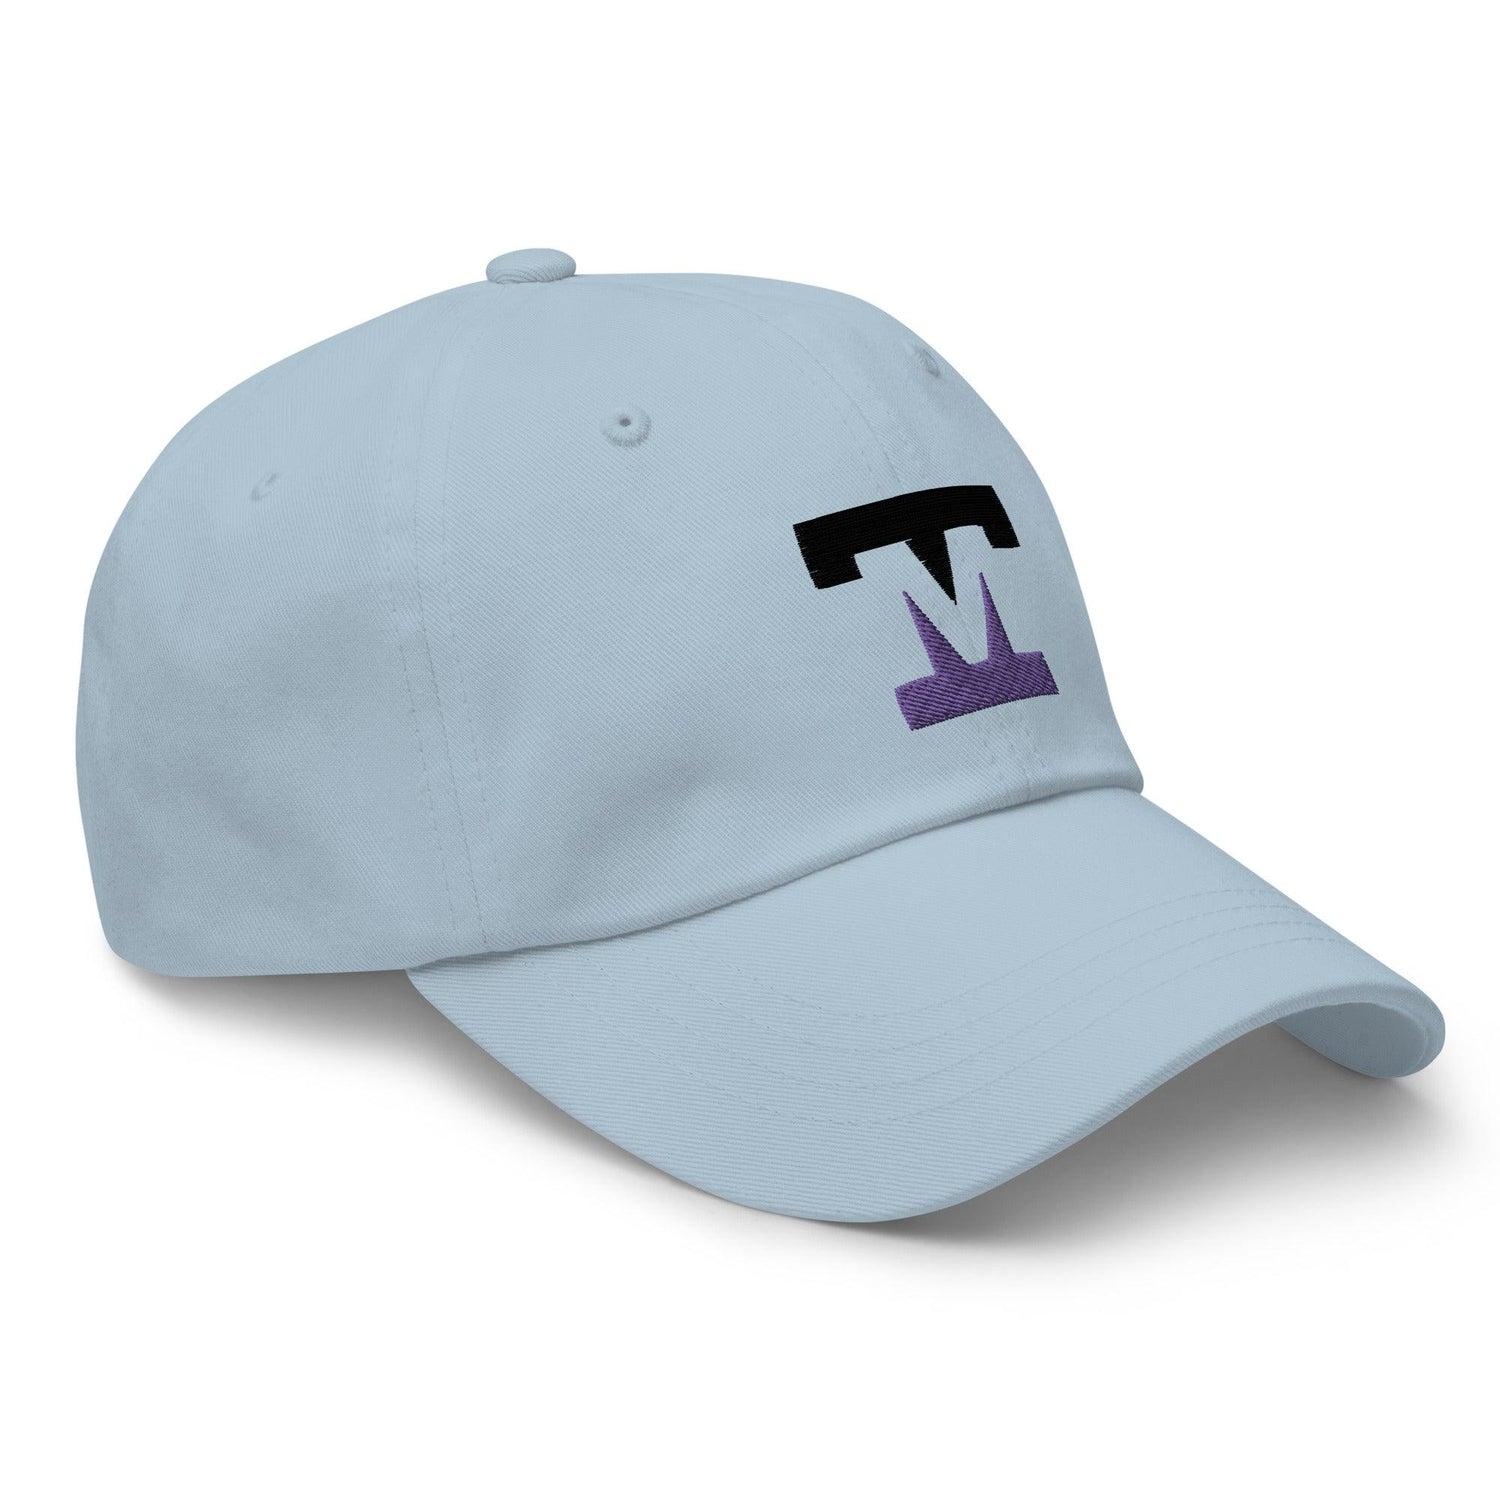 Tanner Mink "Elite" hat - Fan Arch